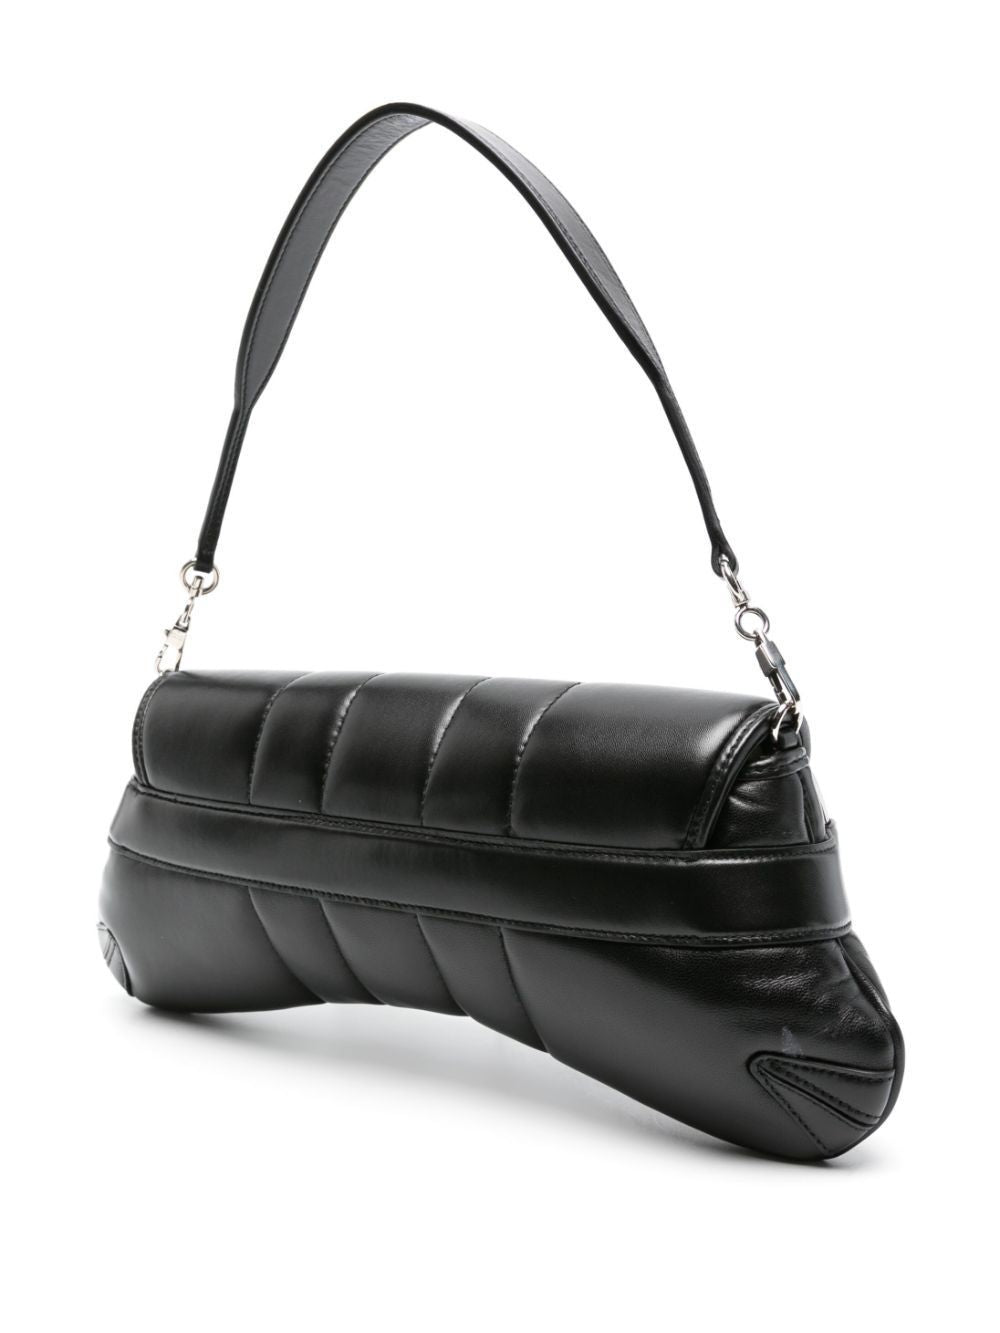 Shop Gucci Black Quilted Medium Horsebit Chain Shoulder Handbag For Women